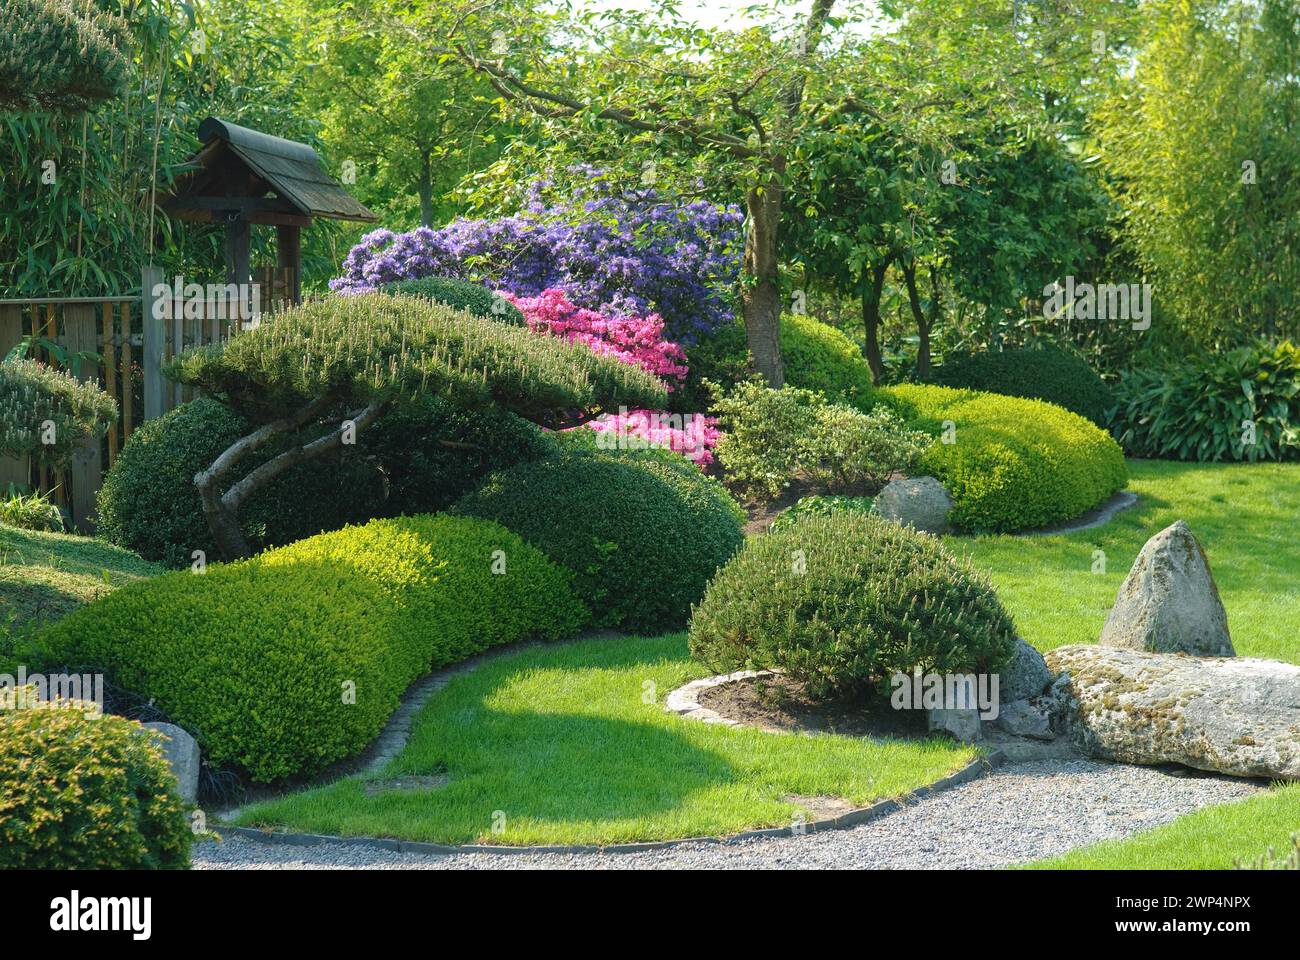 Japanese garden, krummholz pine (Pinus mugo var. pumilio), boxwood (Buxus sempervirens 'Suffruticosa'), Park der Gaerten, Bad Zwischenahn, 81 Stock Photo